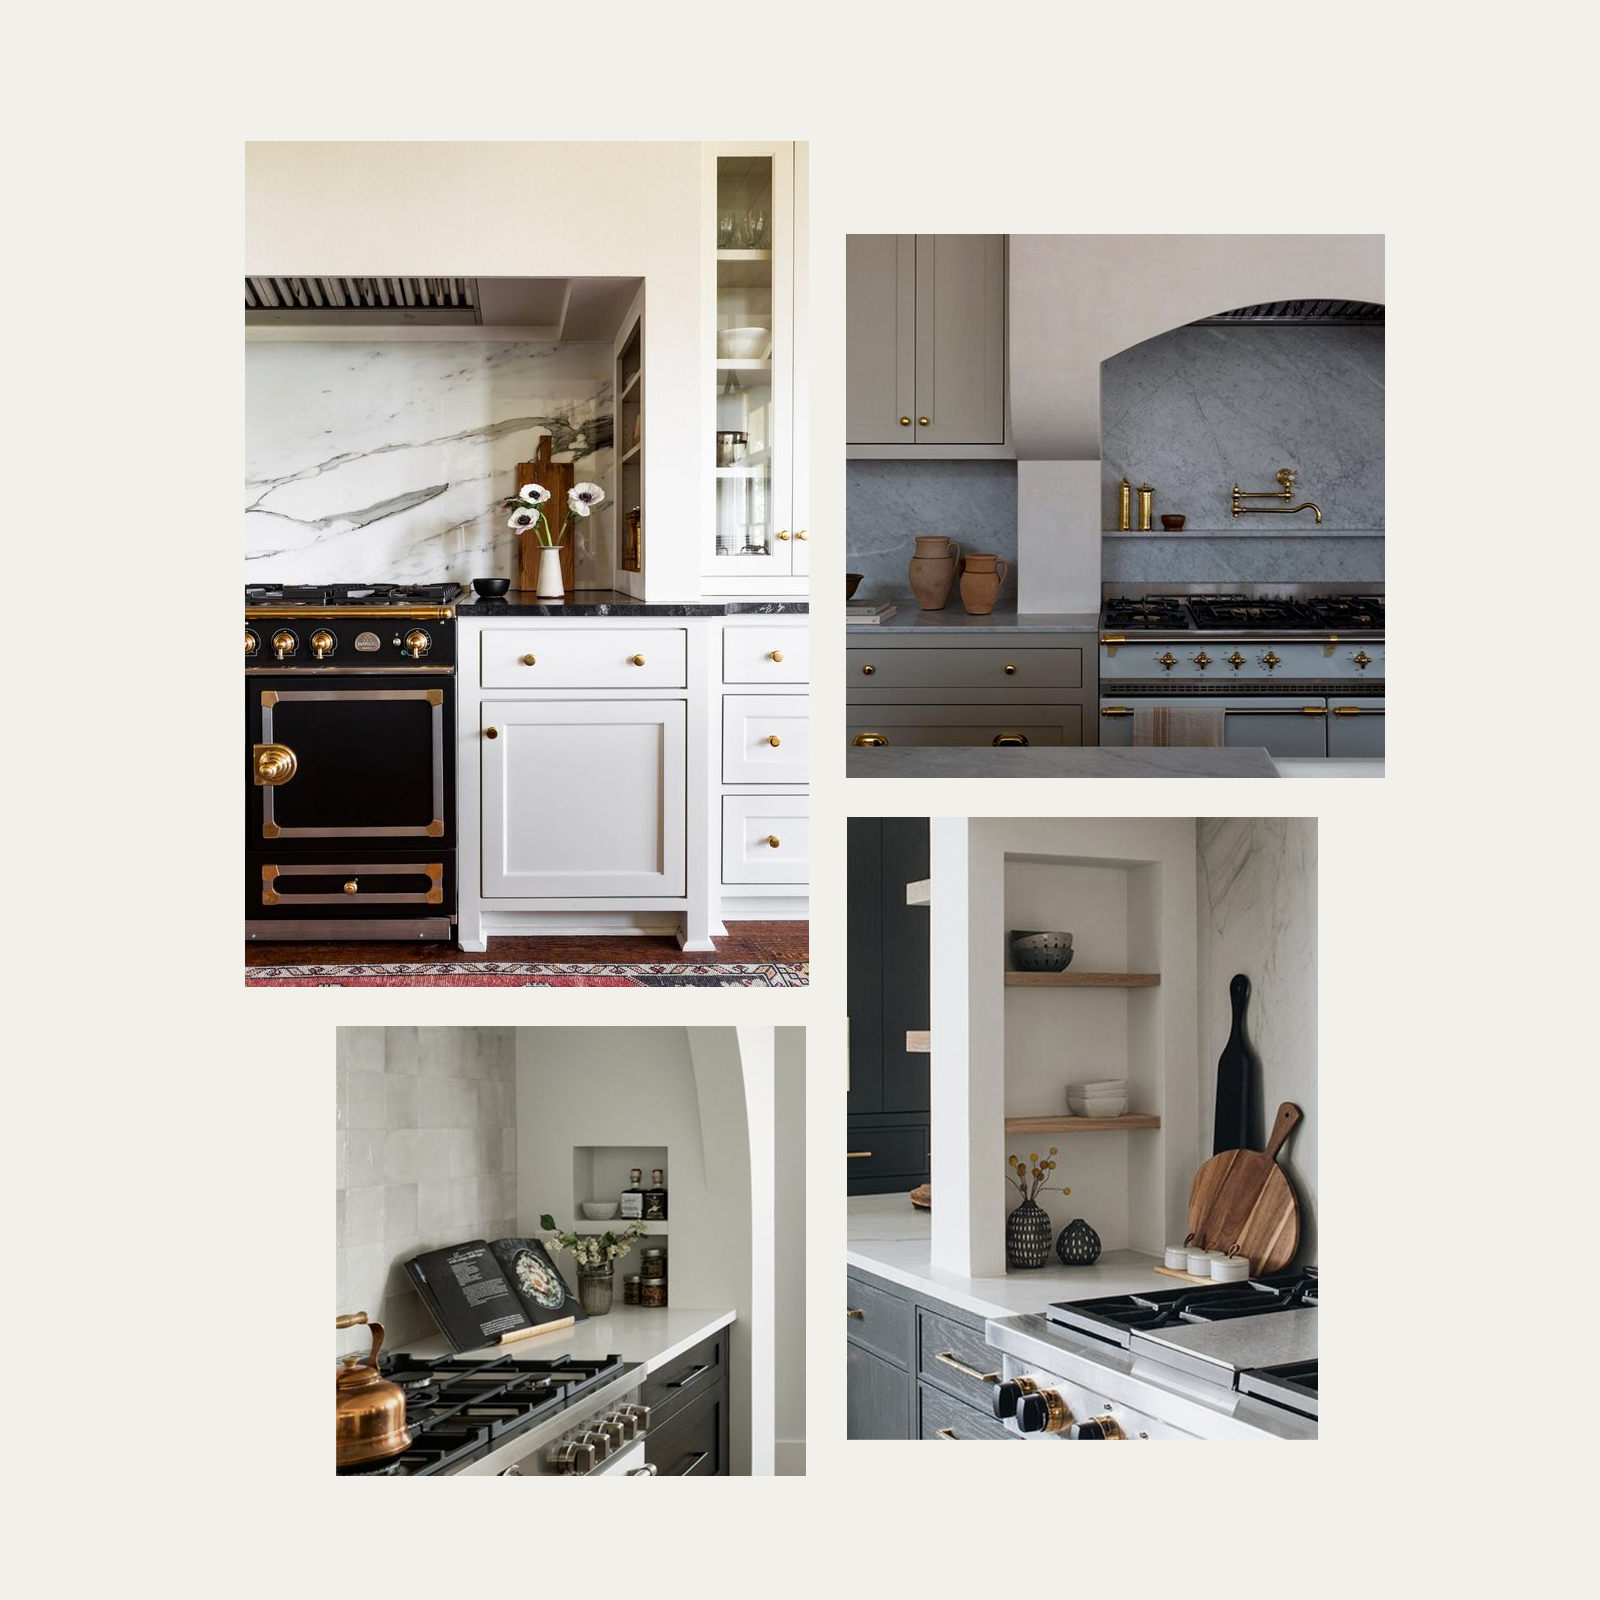 Collage featuring four images of unique kitchen niche details.